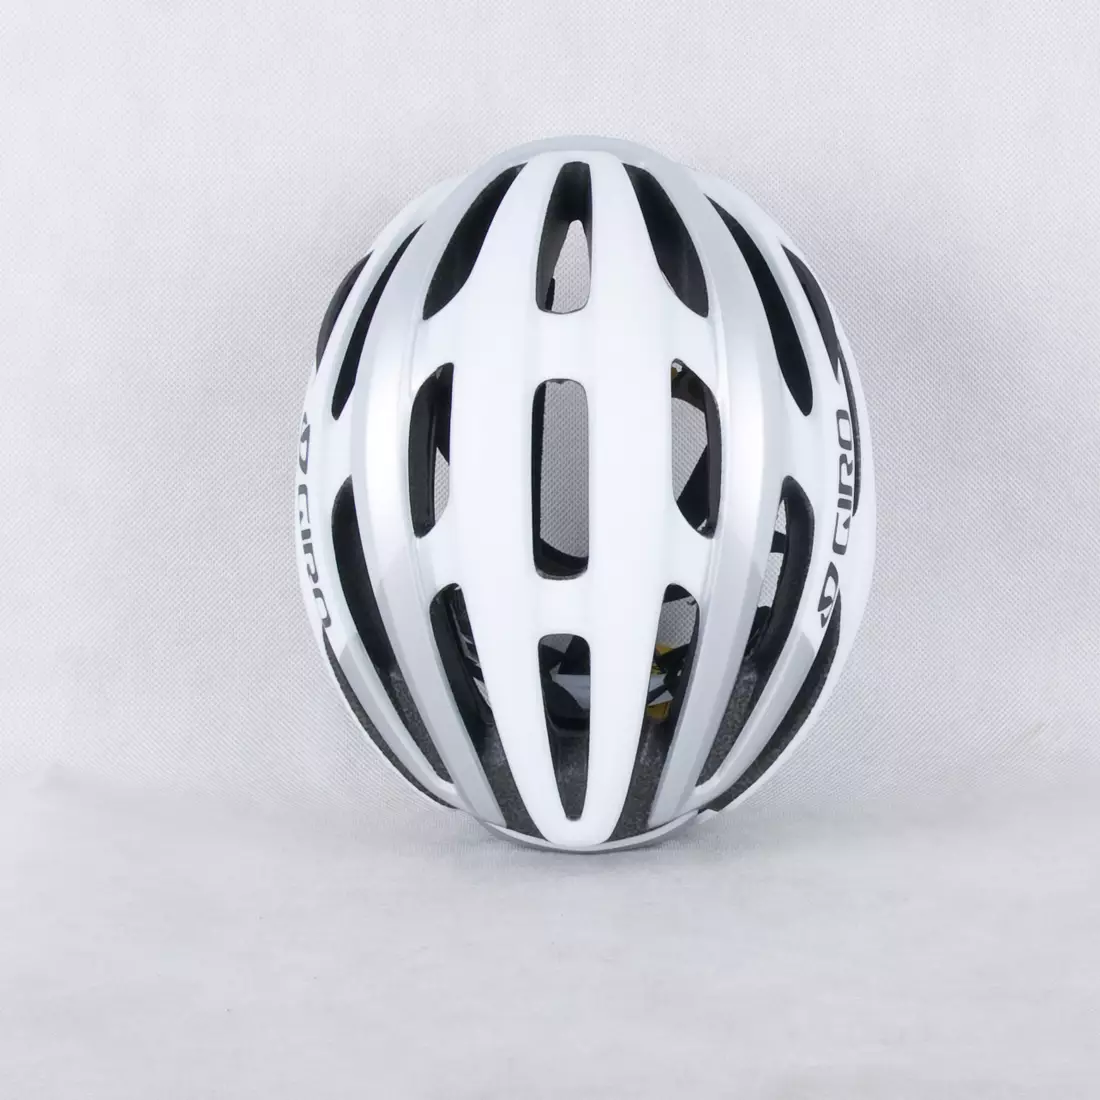 GIRO FORAY MIPS - bielo-strieborná matná cyklistická prilba